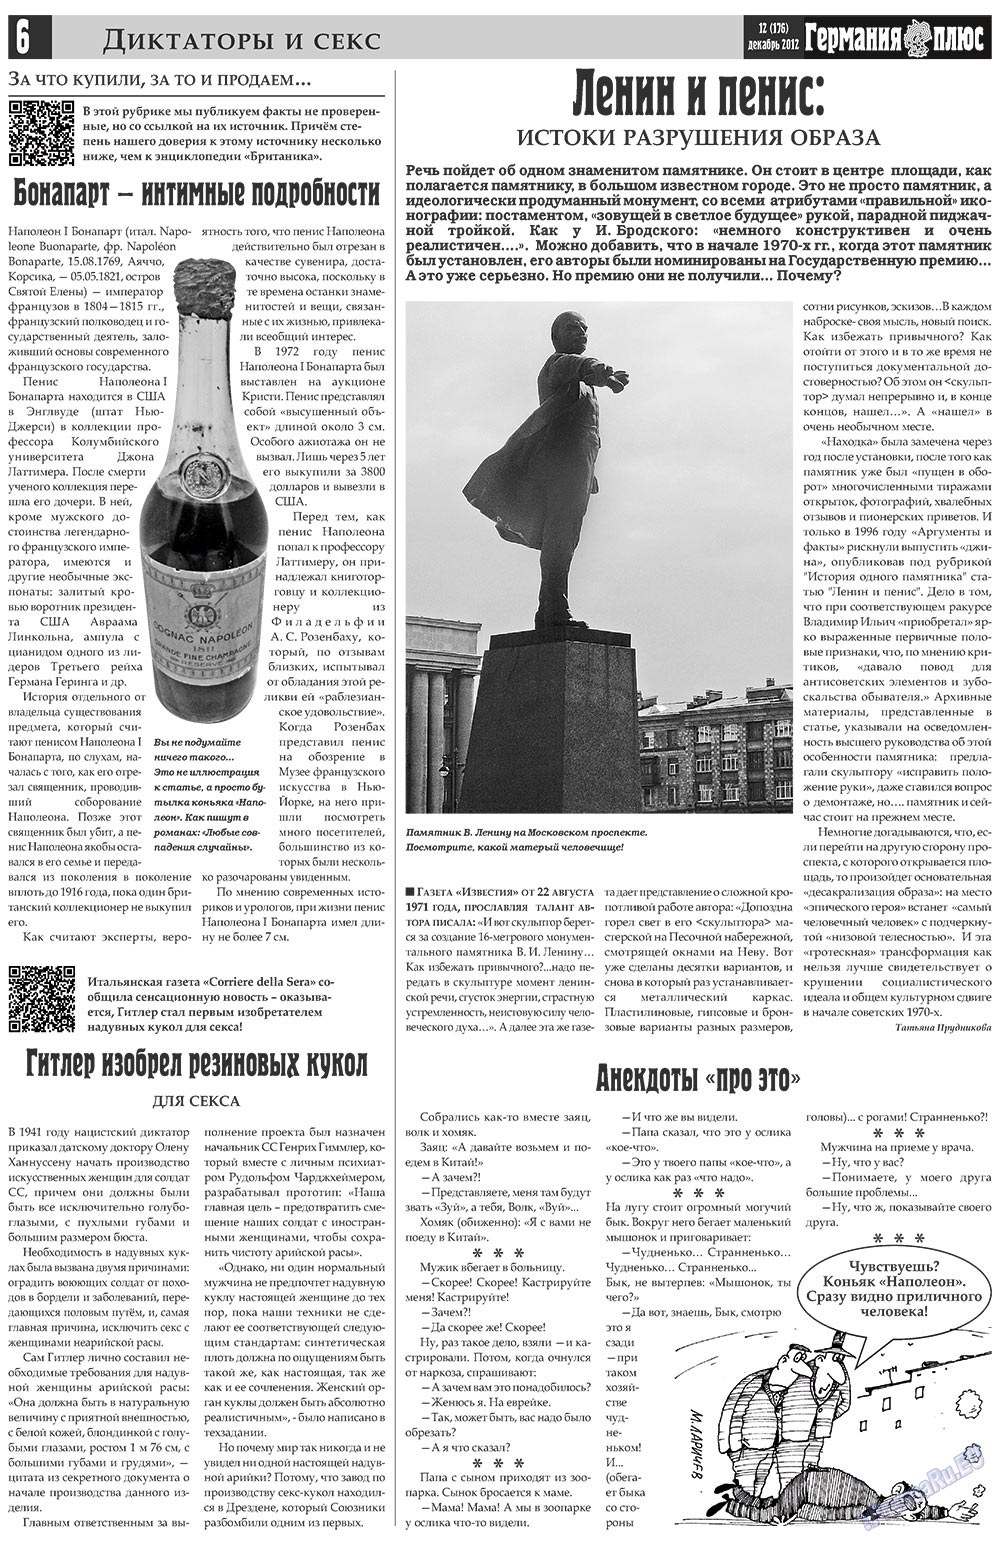 Германия плюс, газета. 2012 №12 стр.6